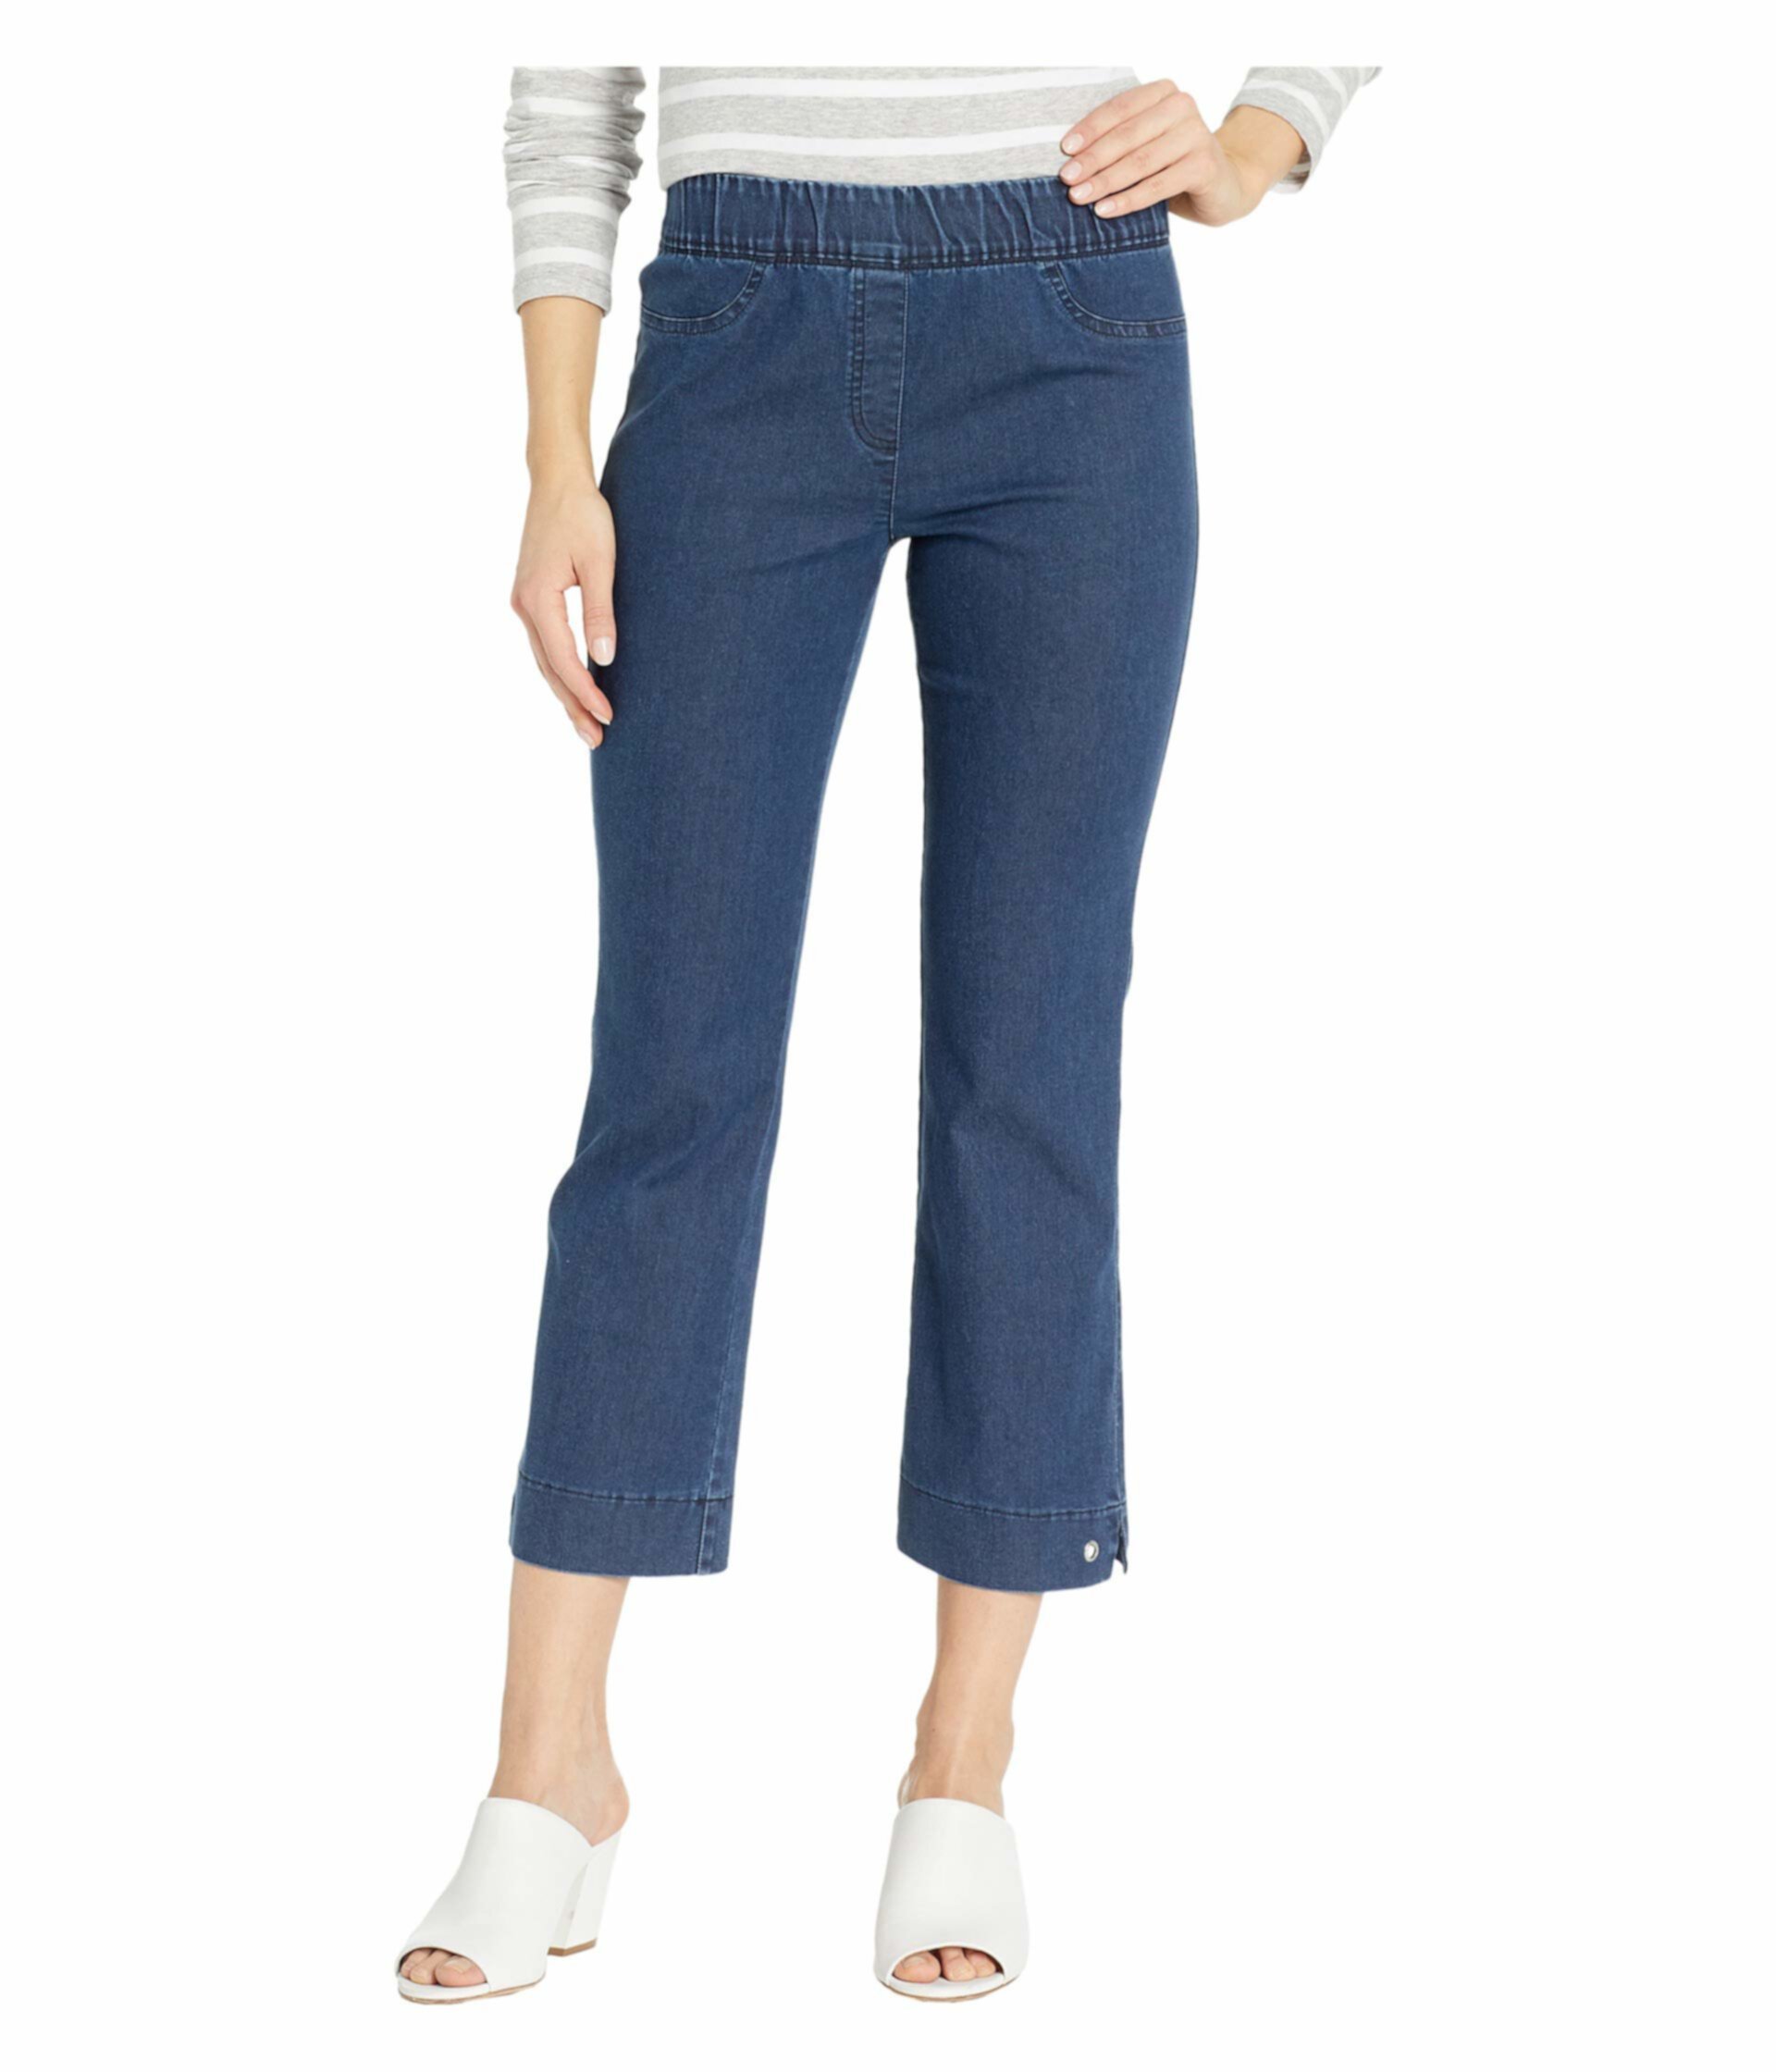 Натяжные джинсовые штаны с эластичными вставками синего цвета Elliott Lauren